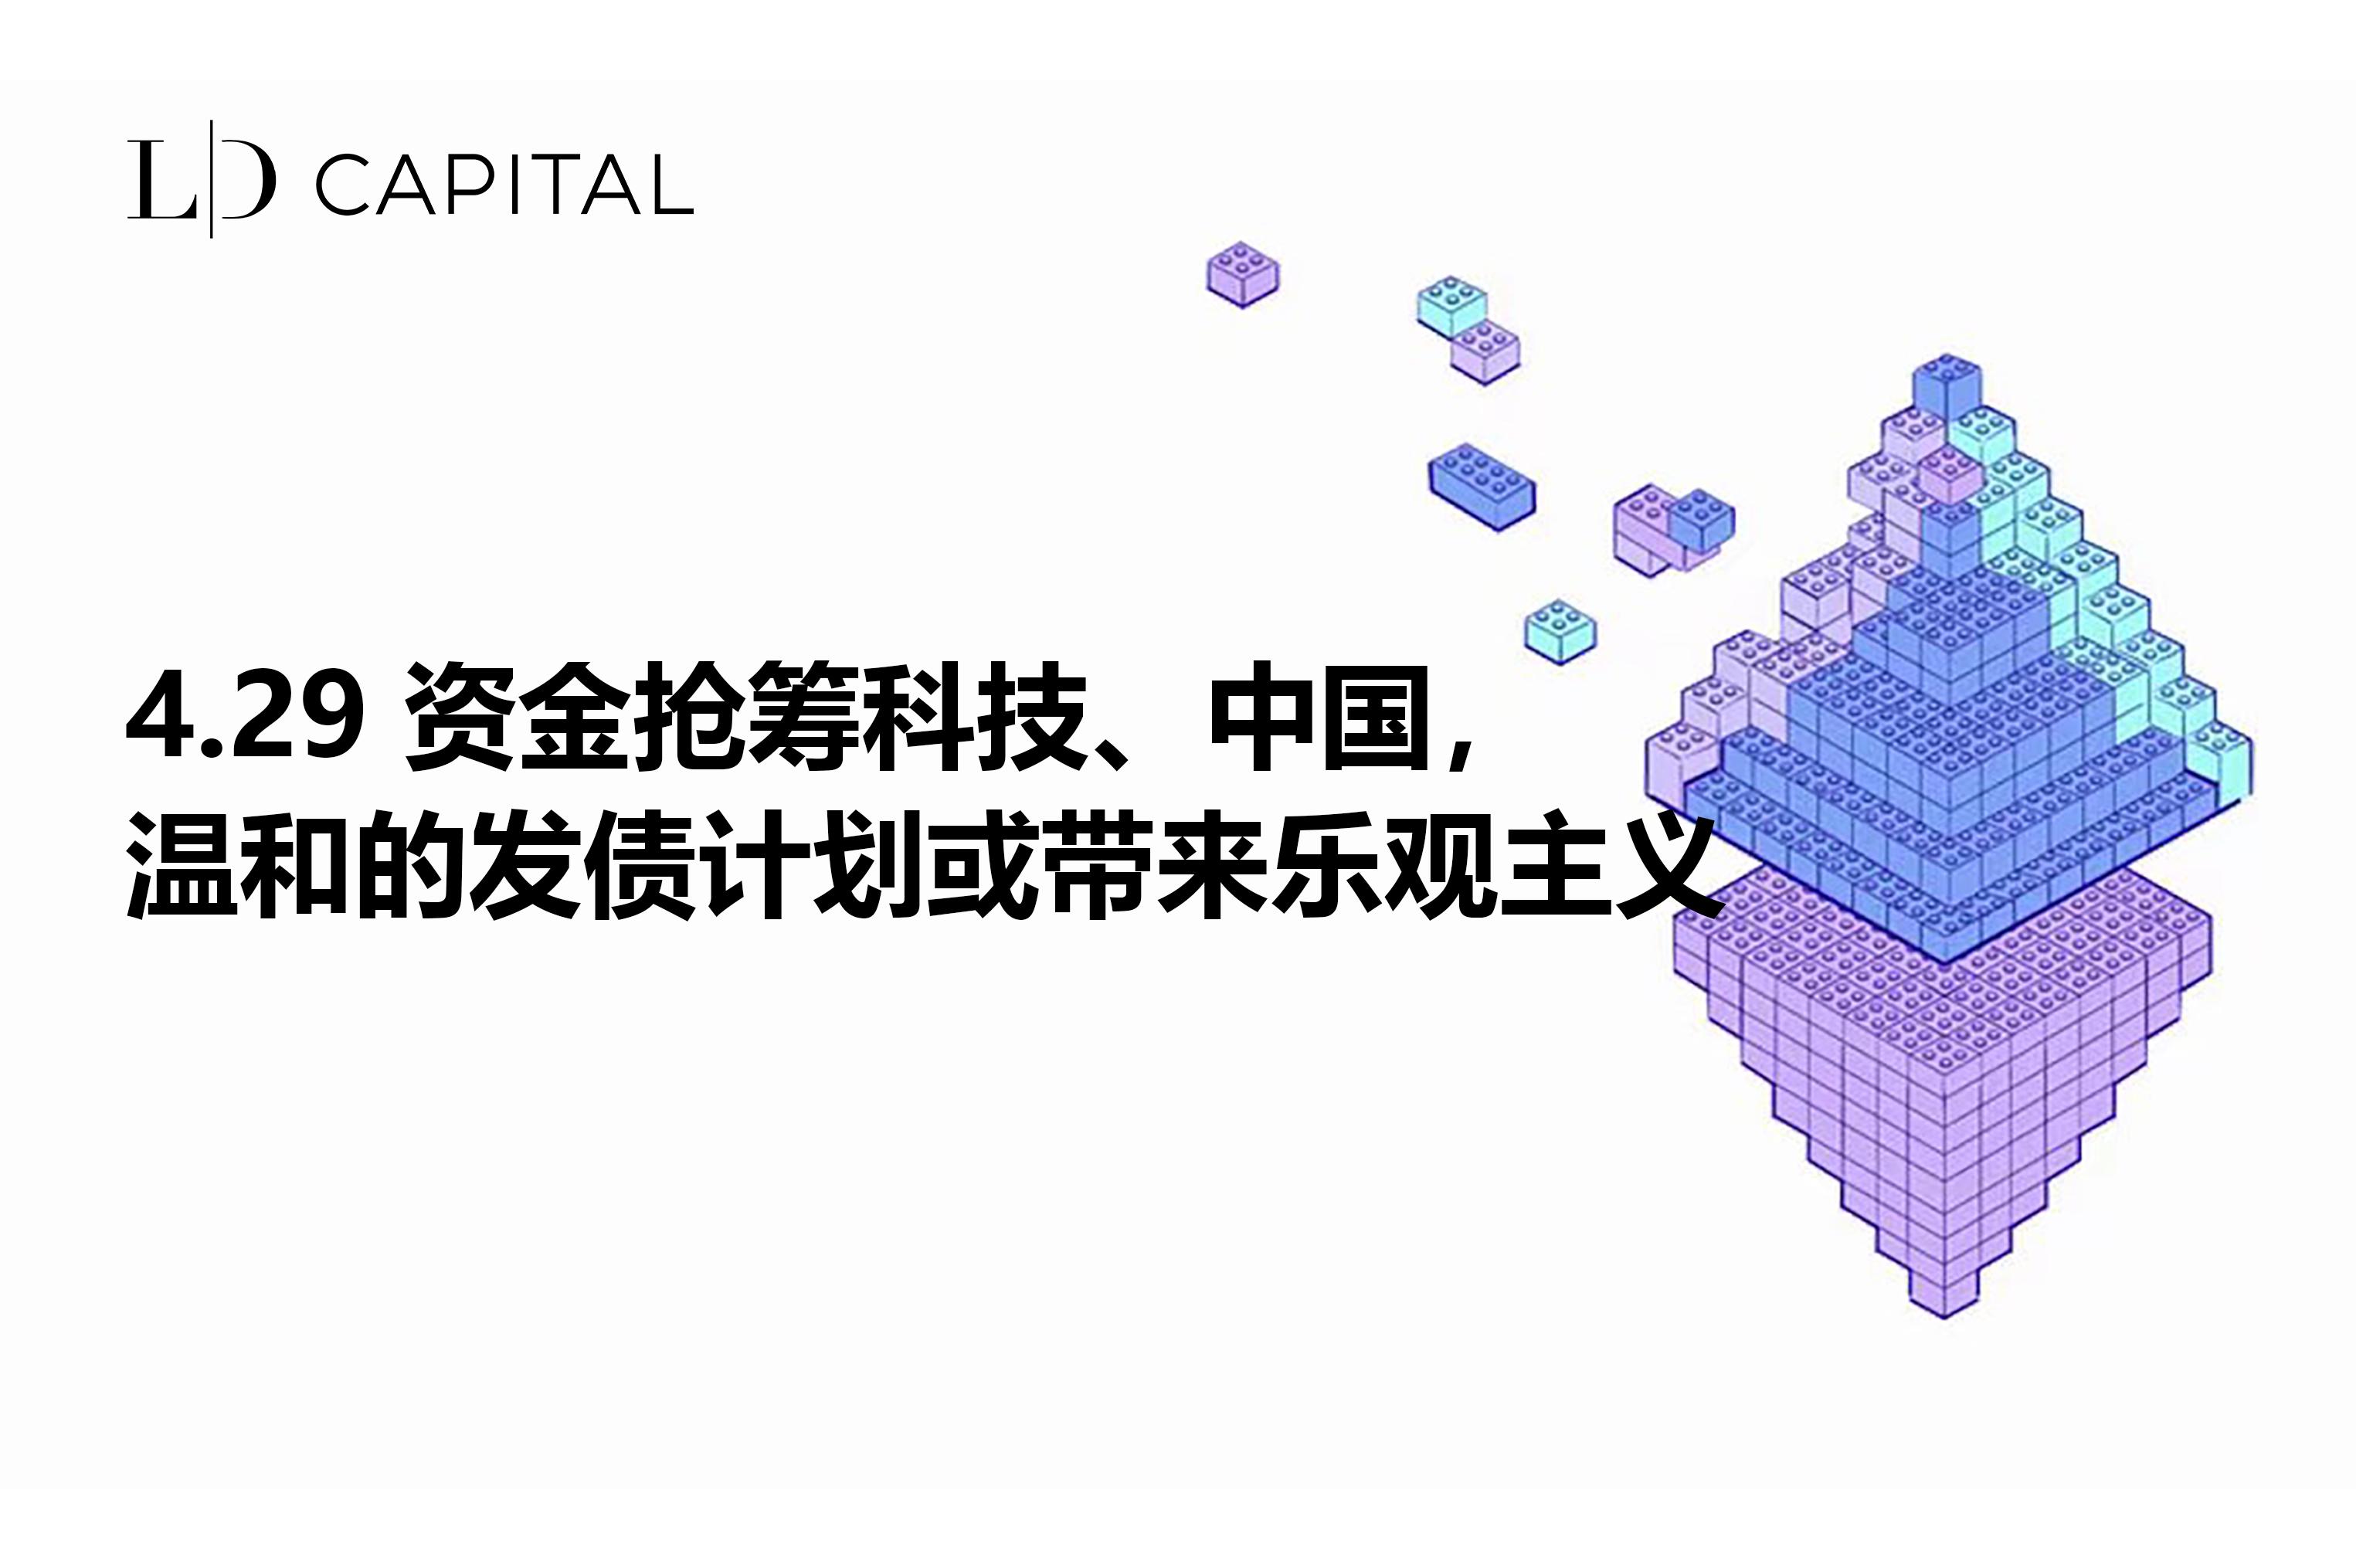 Rapport hebdomadaire LD Capital Macro (4.29) : Les fonds se précipitent vers la technologie, le plan modéré d'émission d'obligations de la Chine peut apporter de l'optimisme